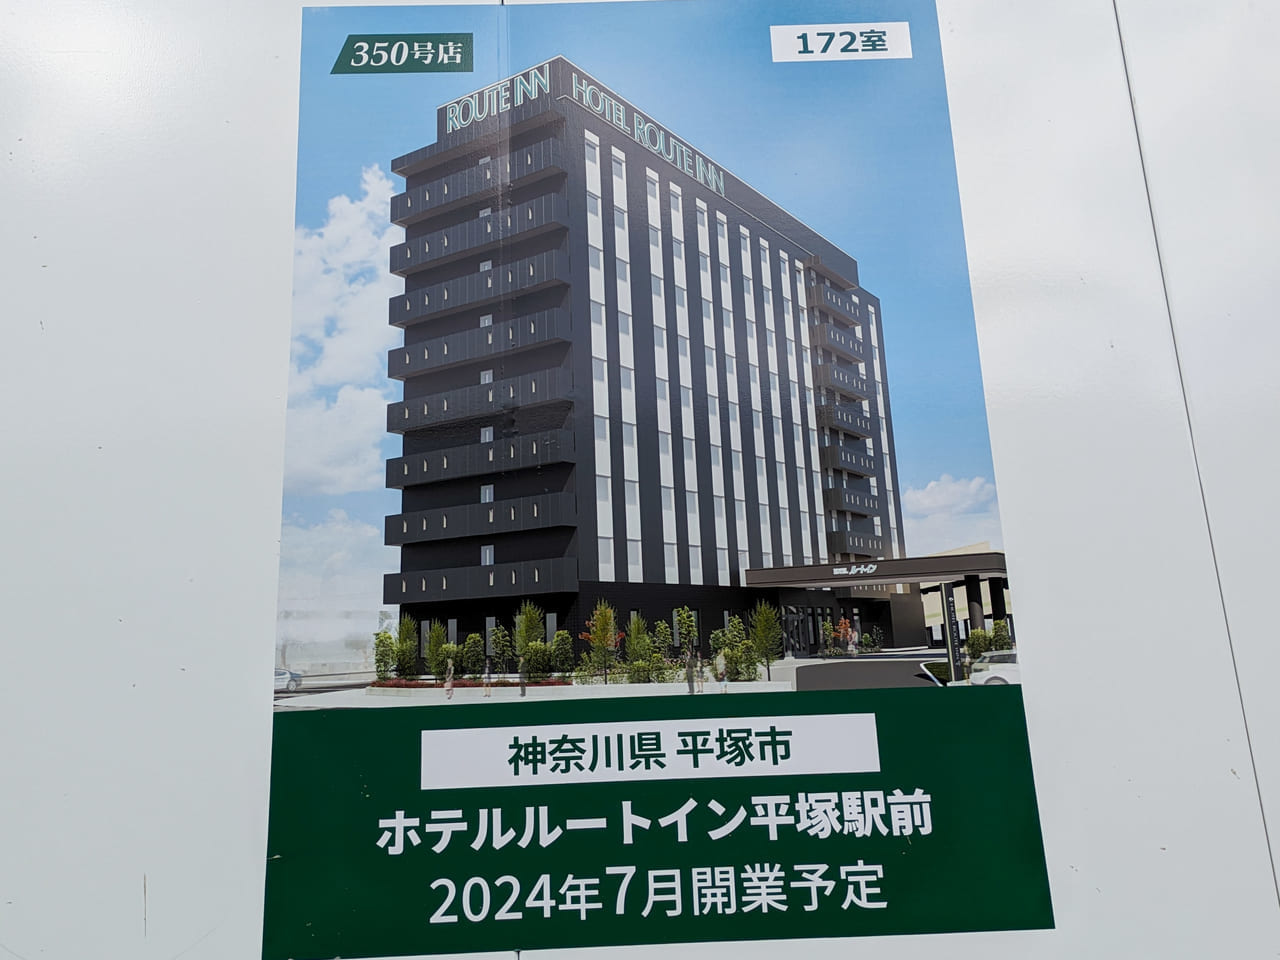 JR平塚駅近くに「ホテルルートイン平塚駅前」が2024年7月にオープン予定です！